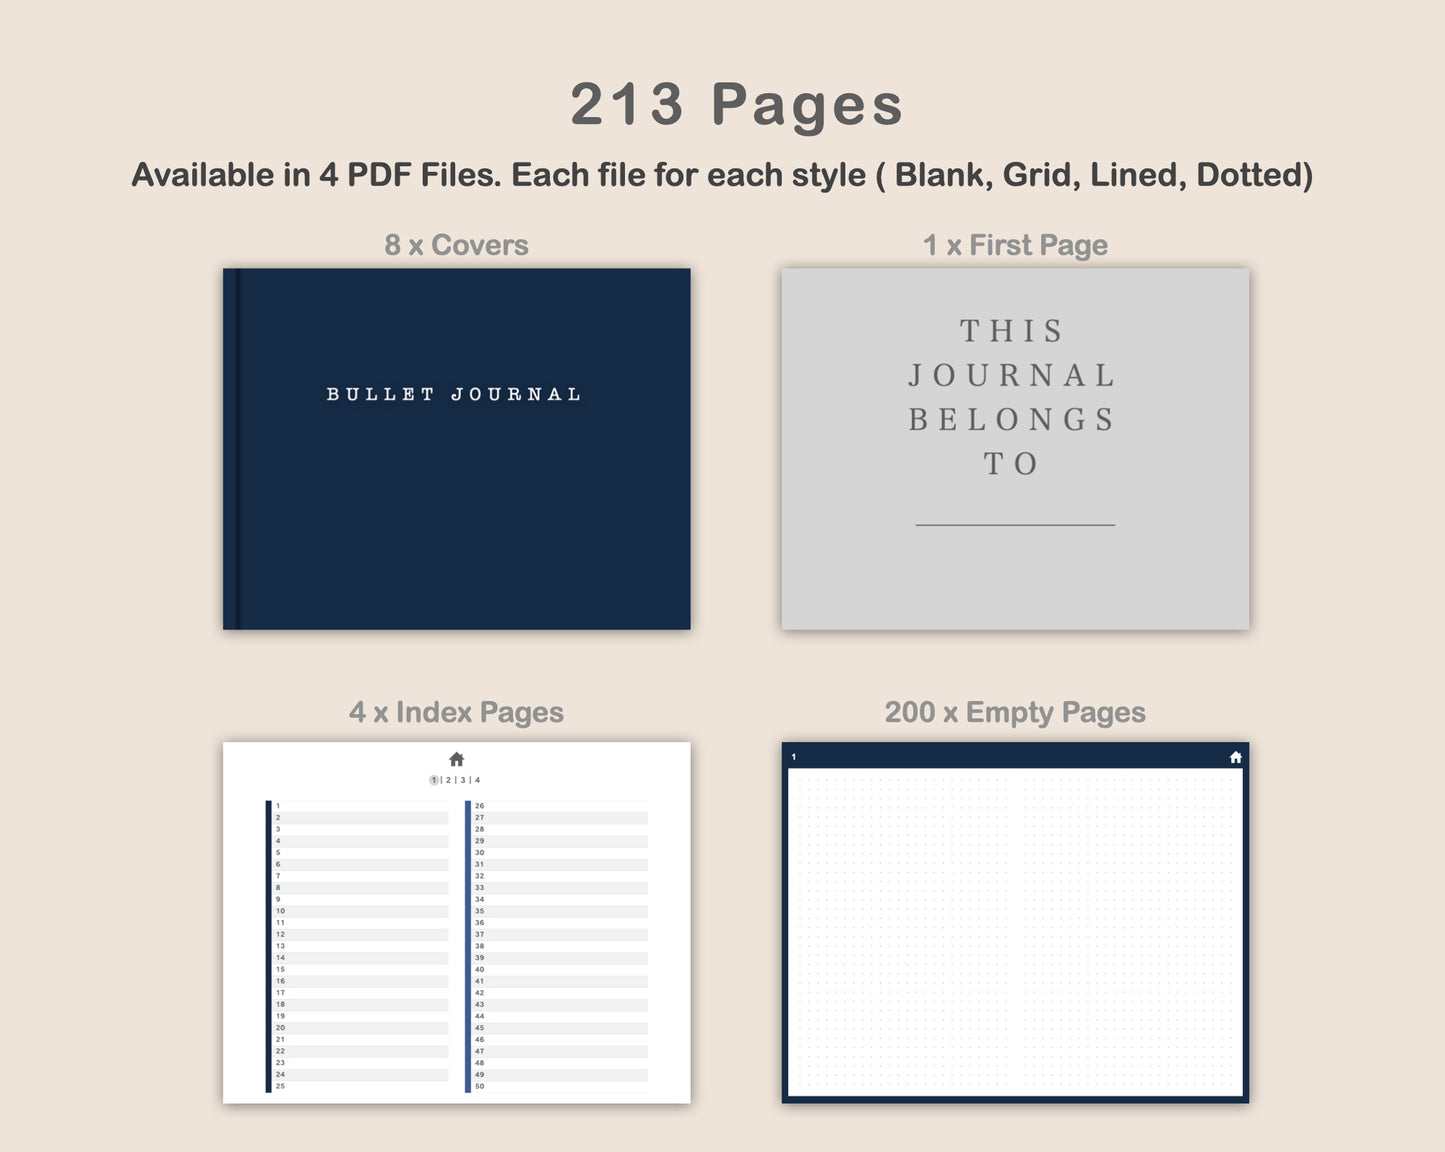 Digital Bullet Journal 200 Pages - Landscape - Blue